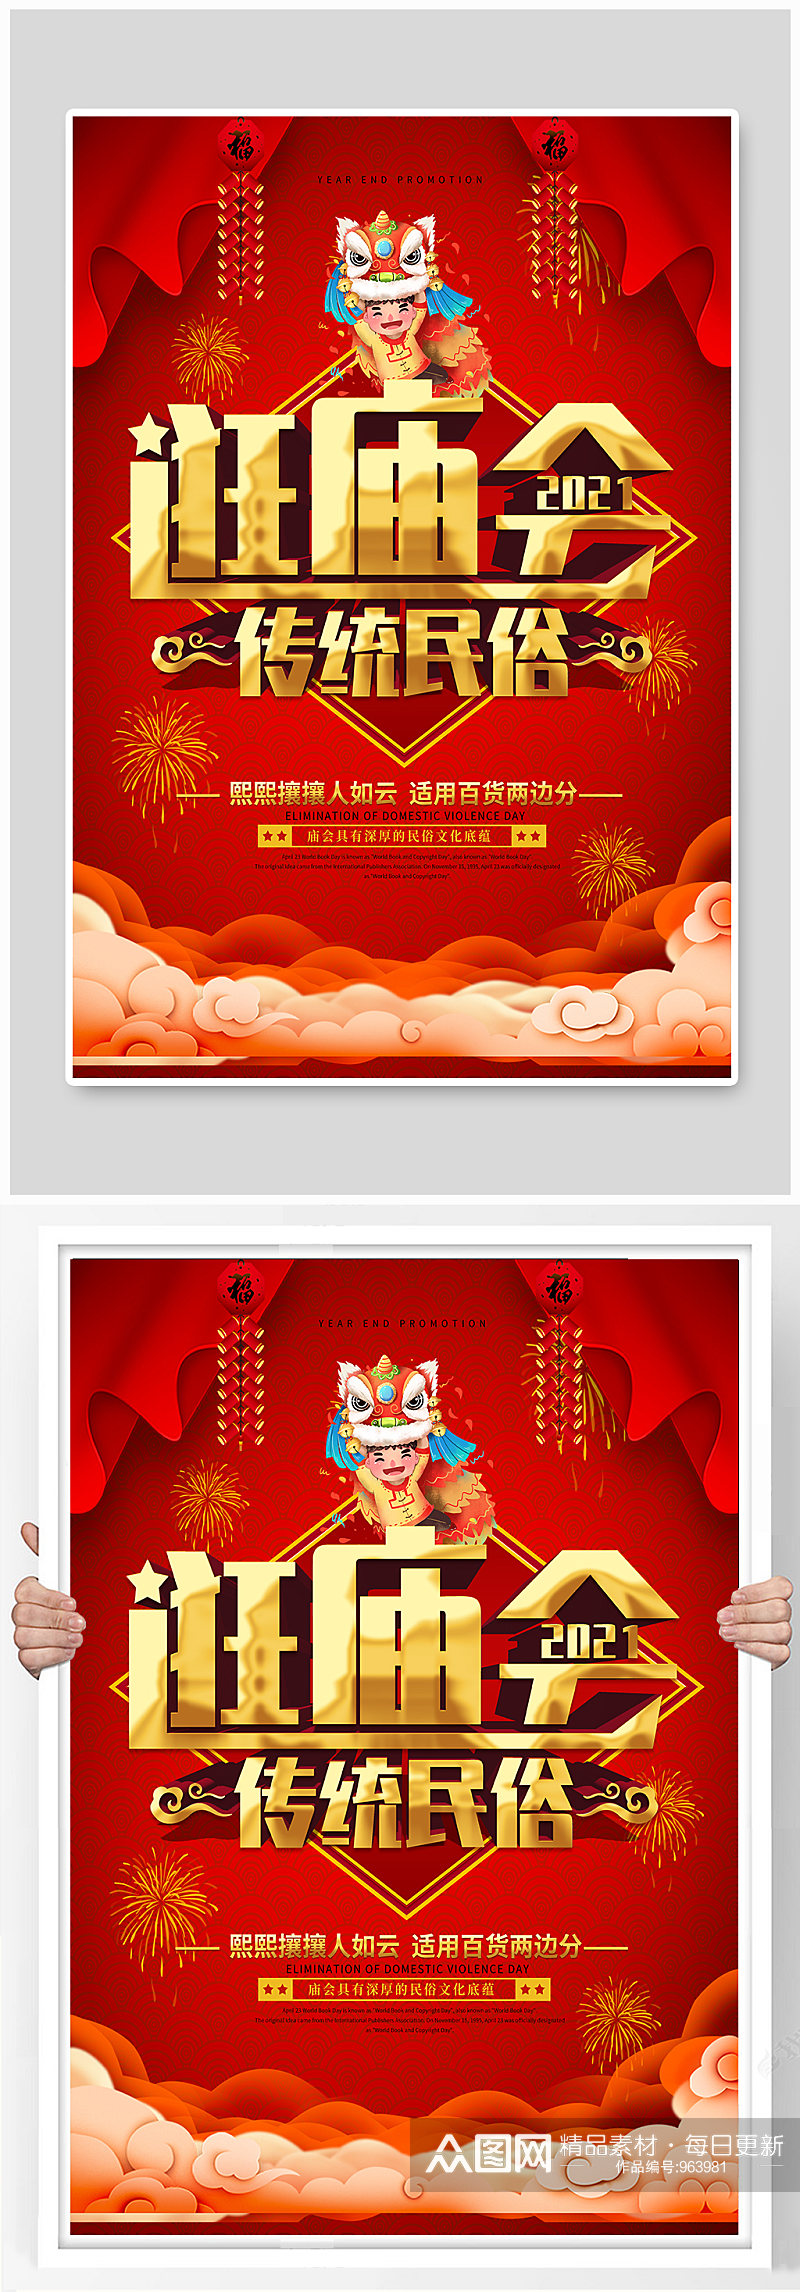 中国风传统逛庙会喜庆宣传海报素材